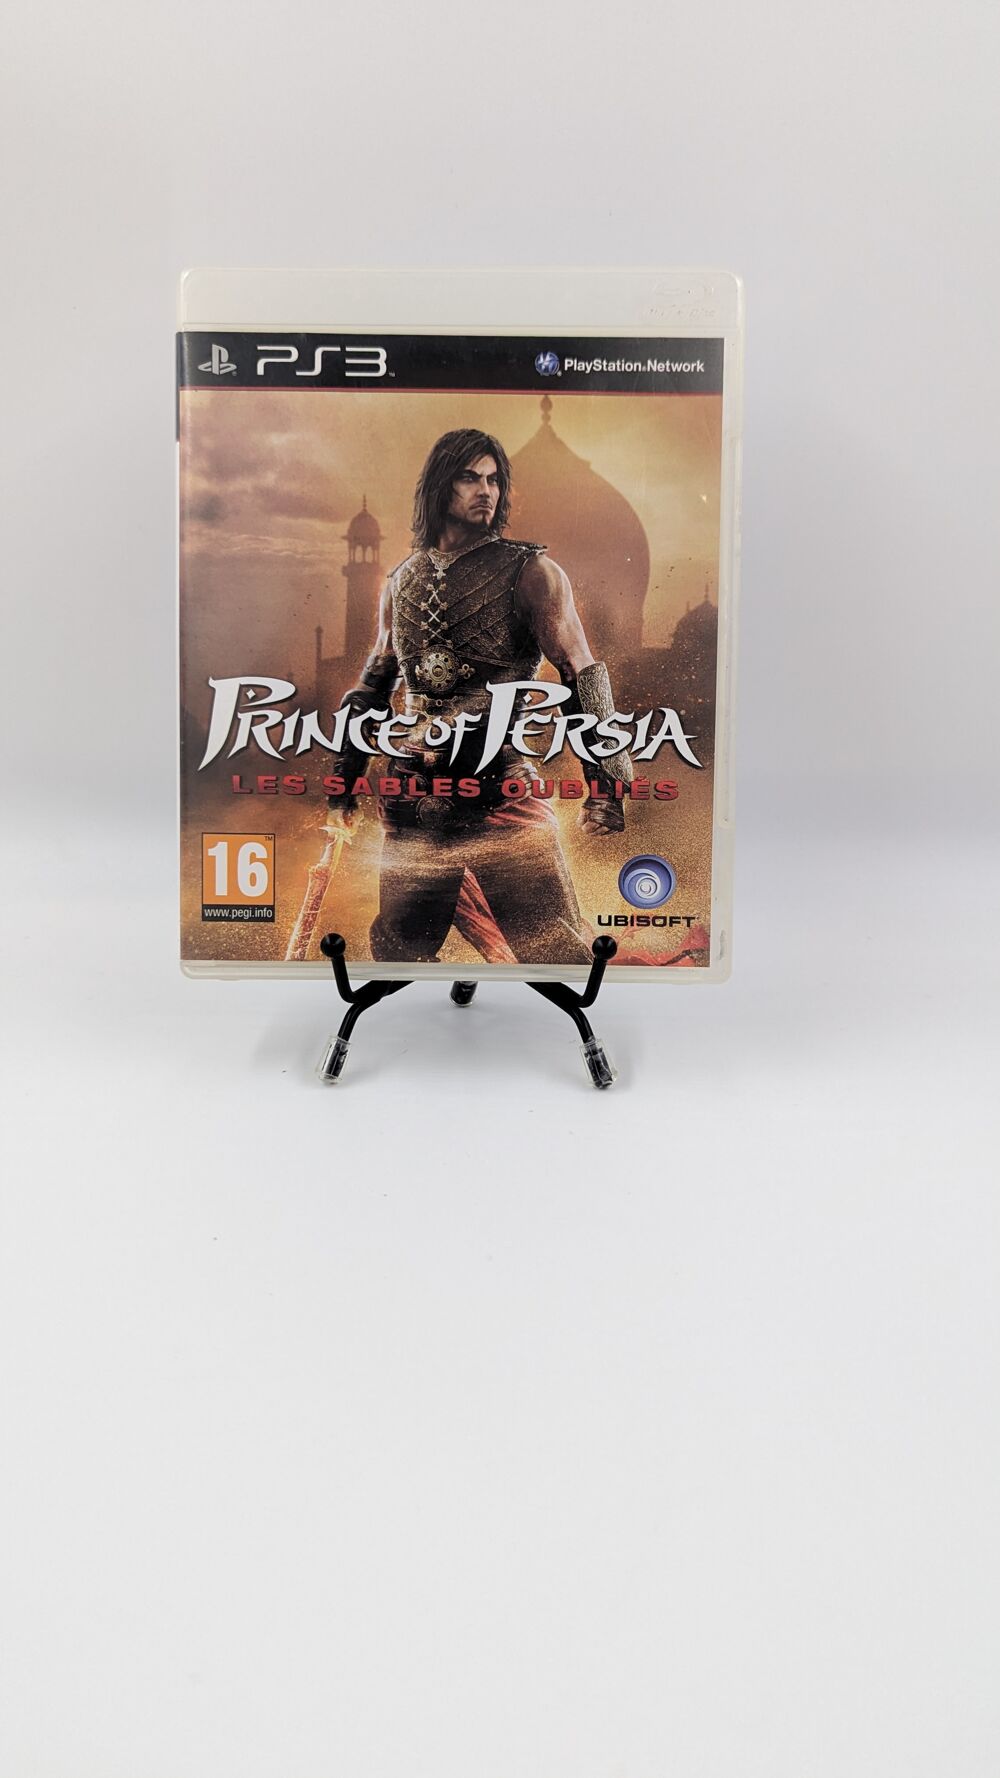 Jeu PS3 Playstation 3 Prince of Persia Les sables sans not Consoles et jeux vidos